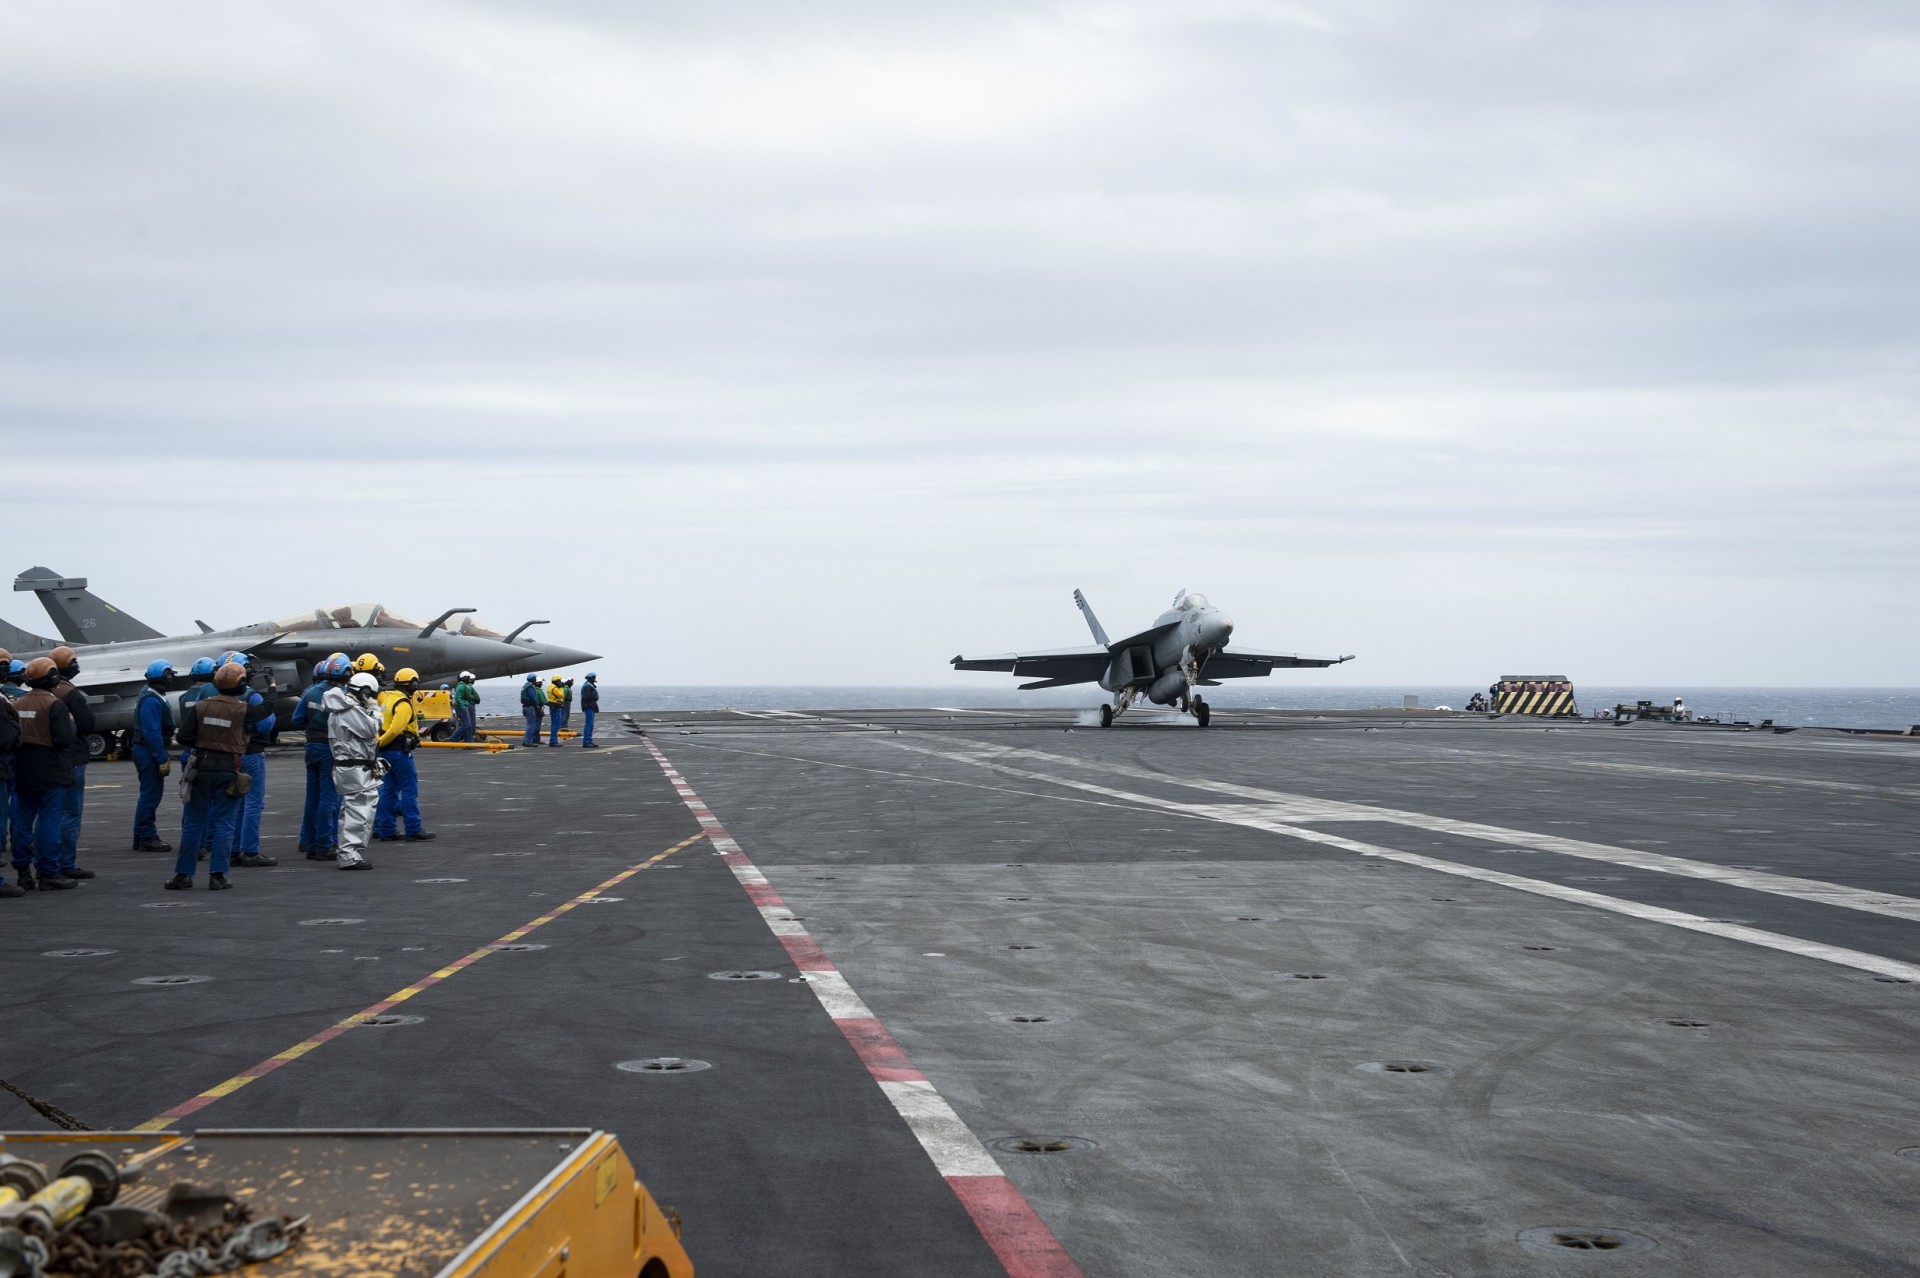 Lądowanie amerykańskiego samolotu F/A-18E Super Hornet na francuskim lotniskowcu „Charles de Gaulle” w czasie ćwiczeń na Morzu Śródziemnym 3 marca 2020 r. Fot. Kaleb J. Sarten/US Navy